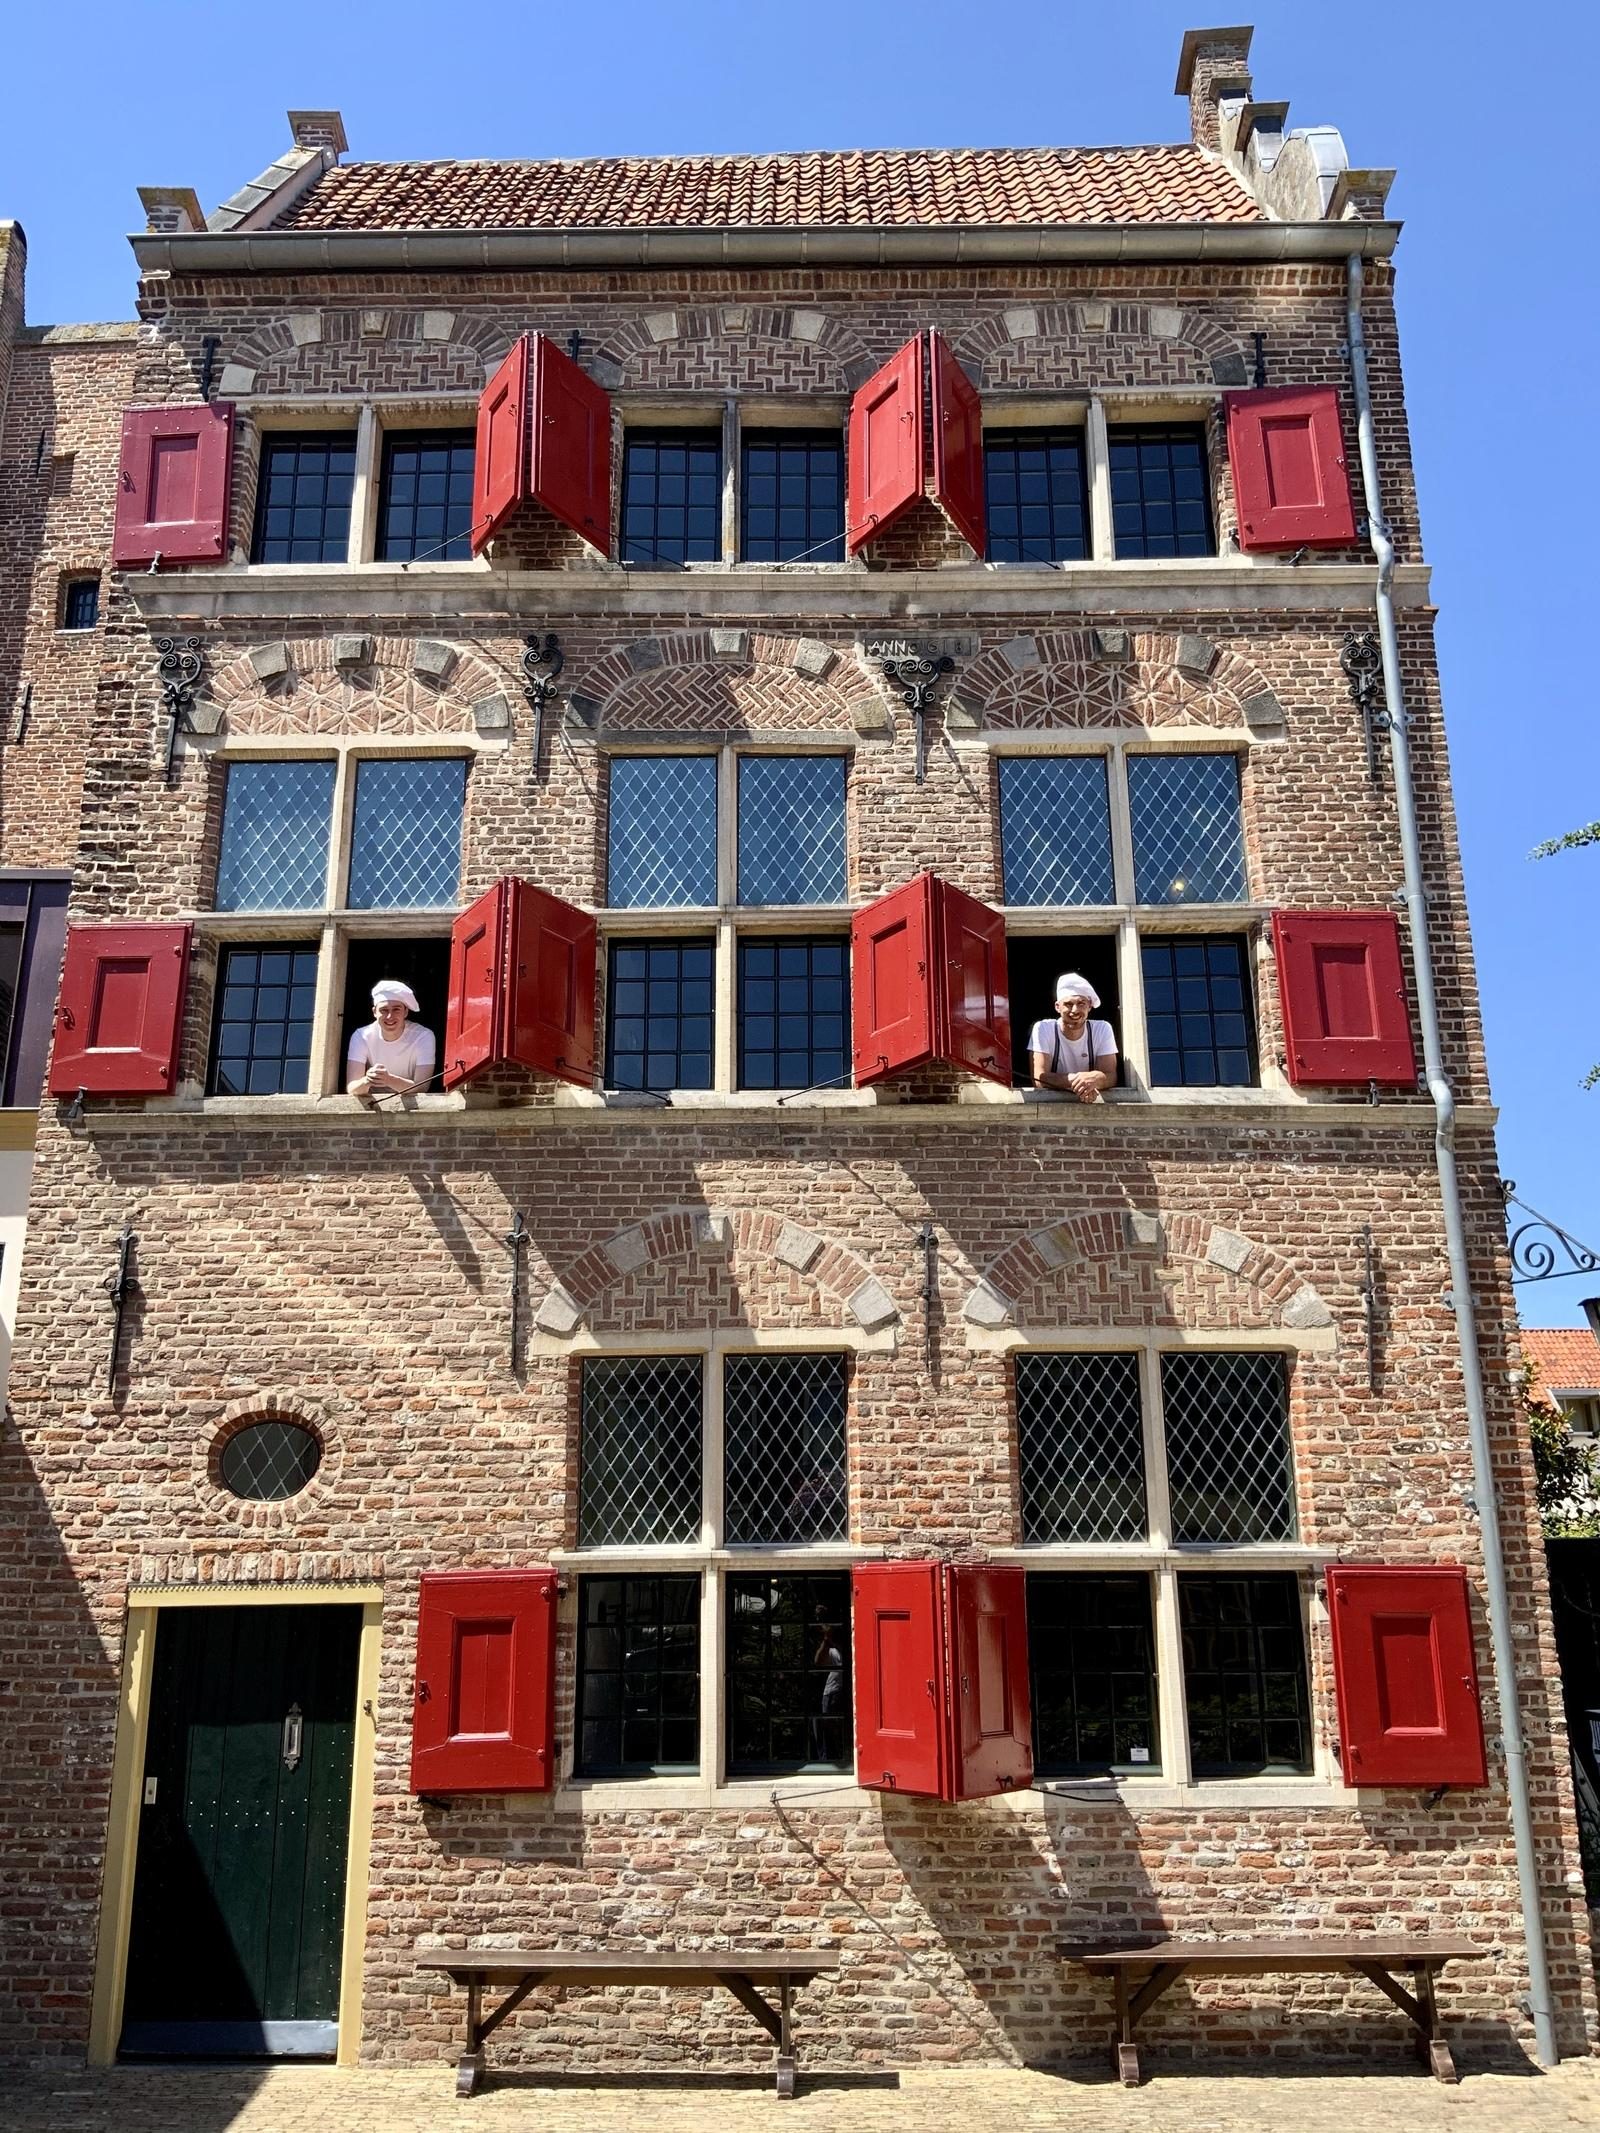 Niederländisches Bäckerei Museum in Hattem